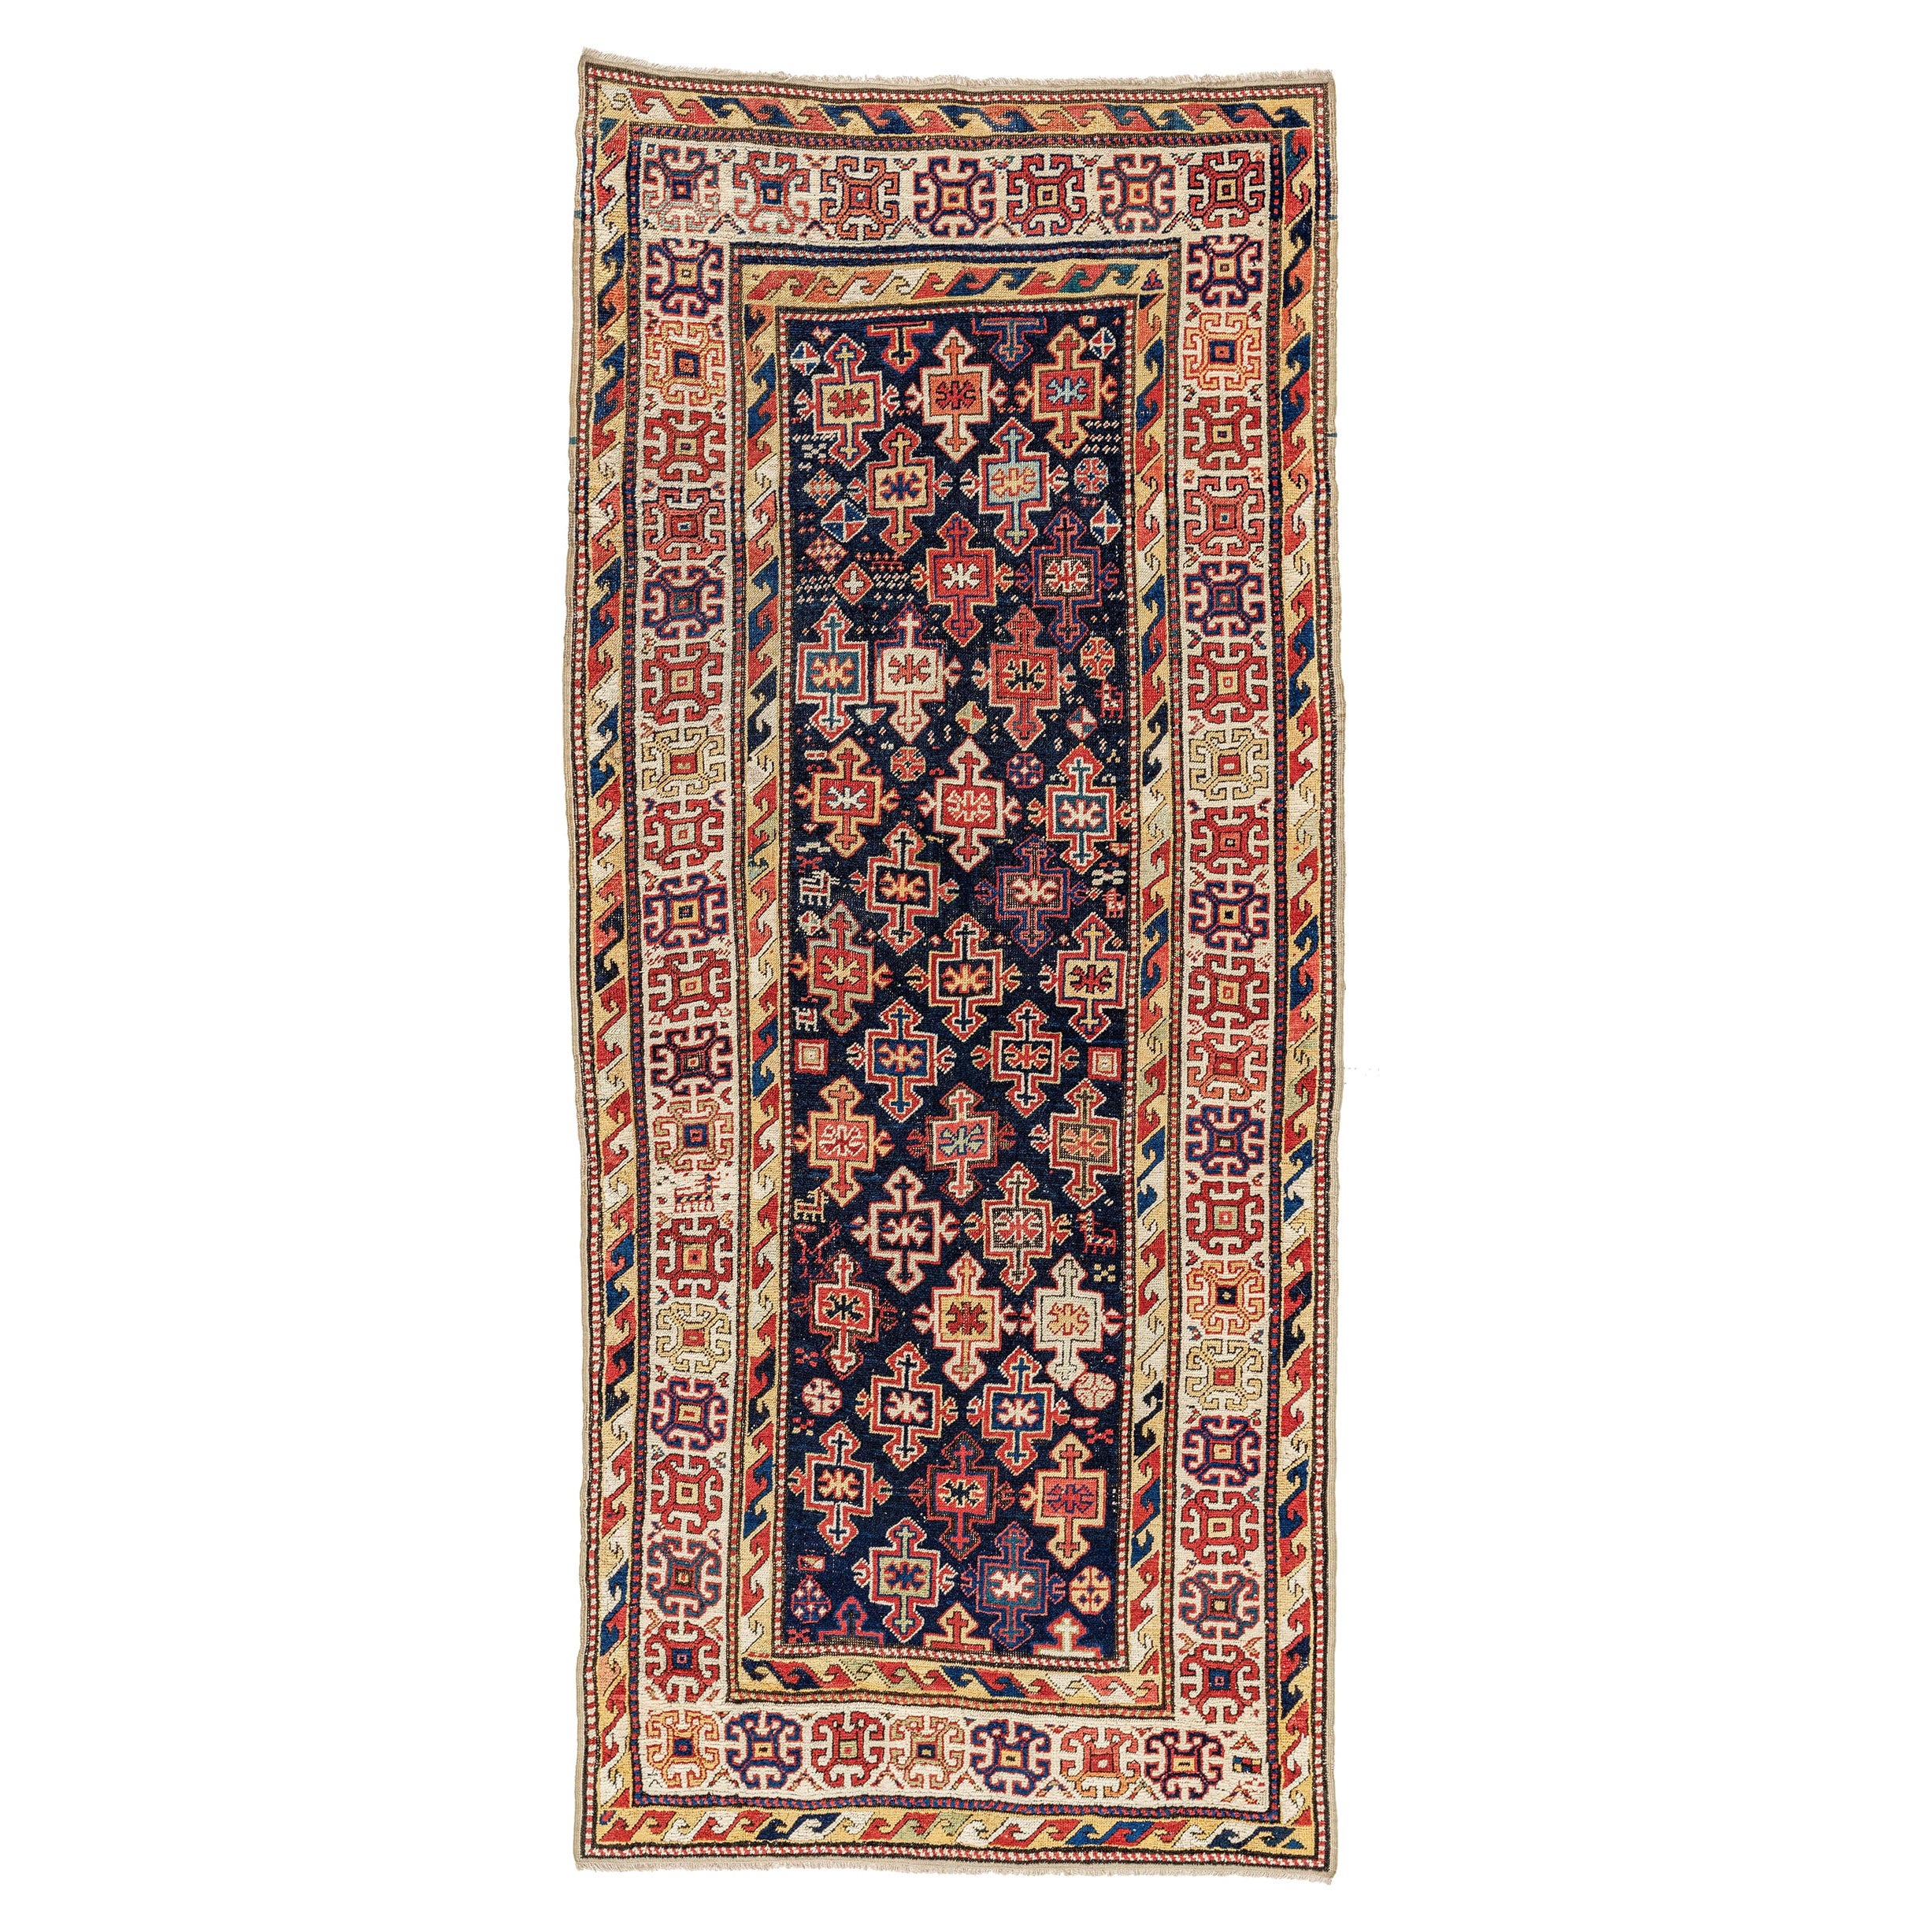 Antique Avar Rug, Mid-19th Century